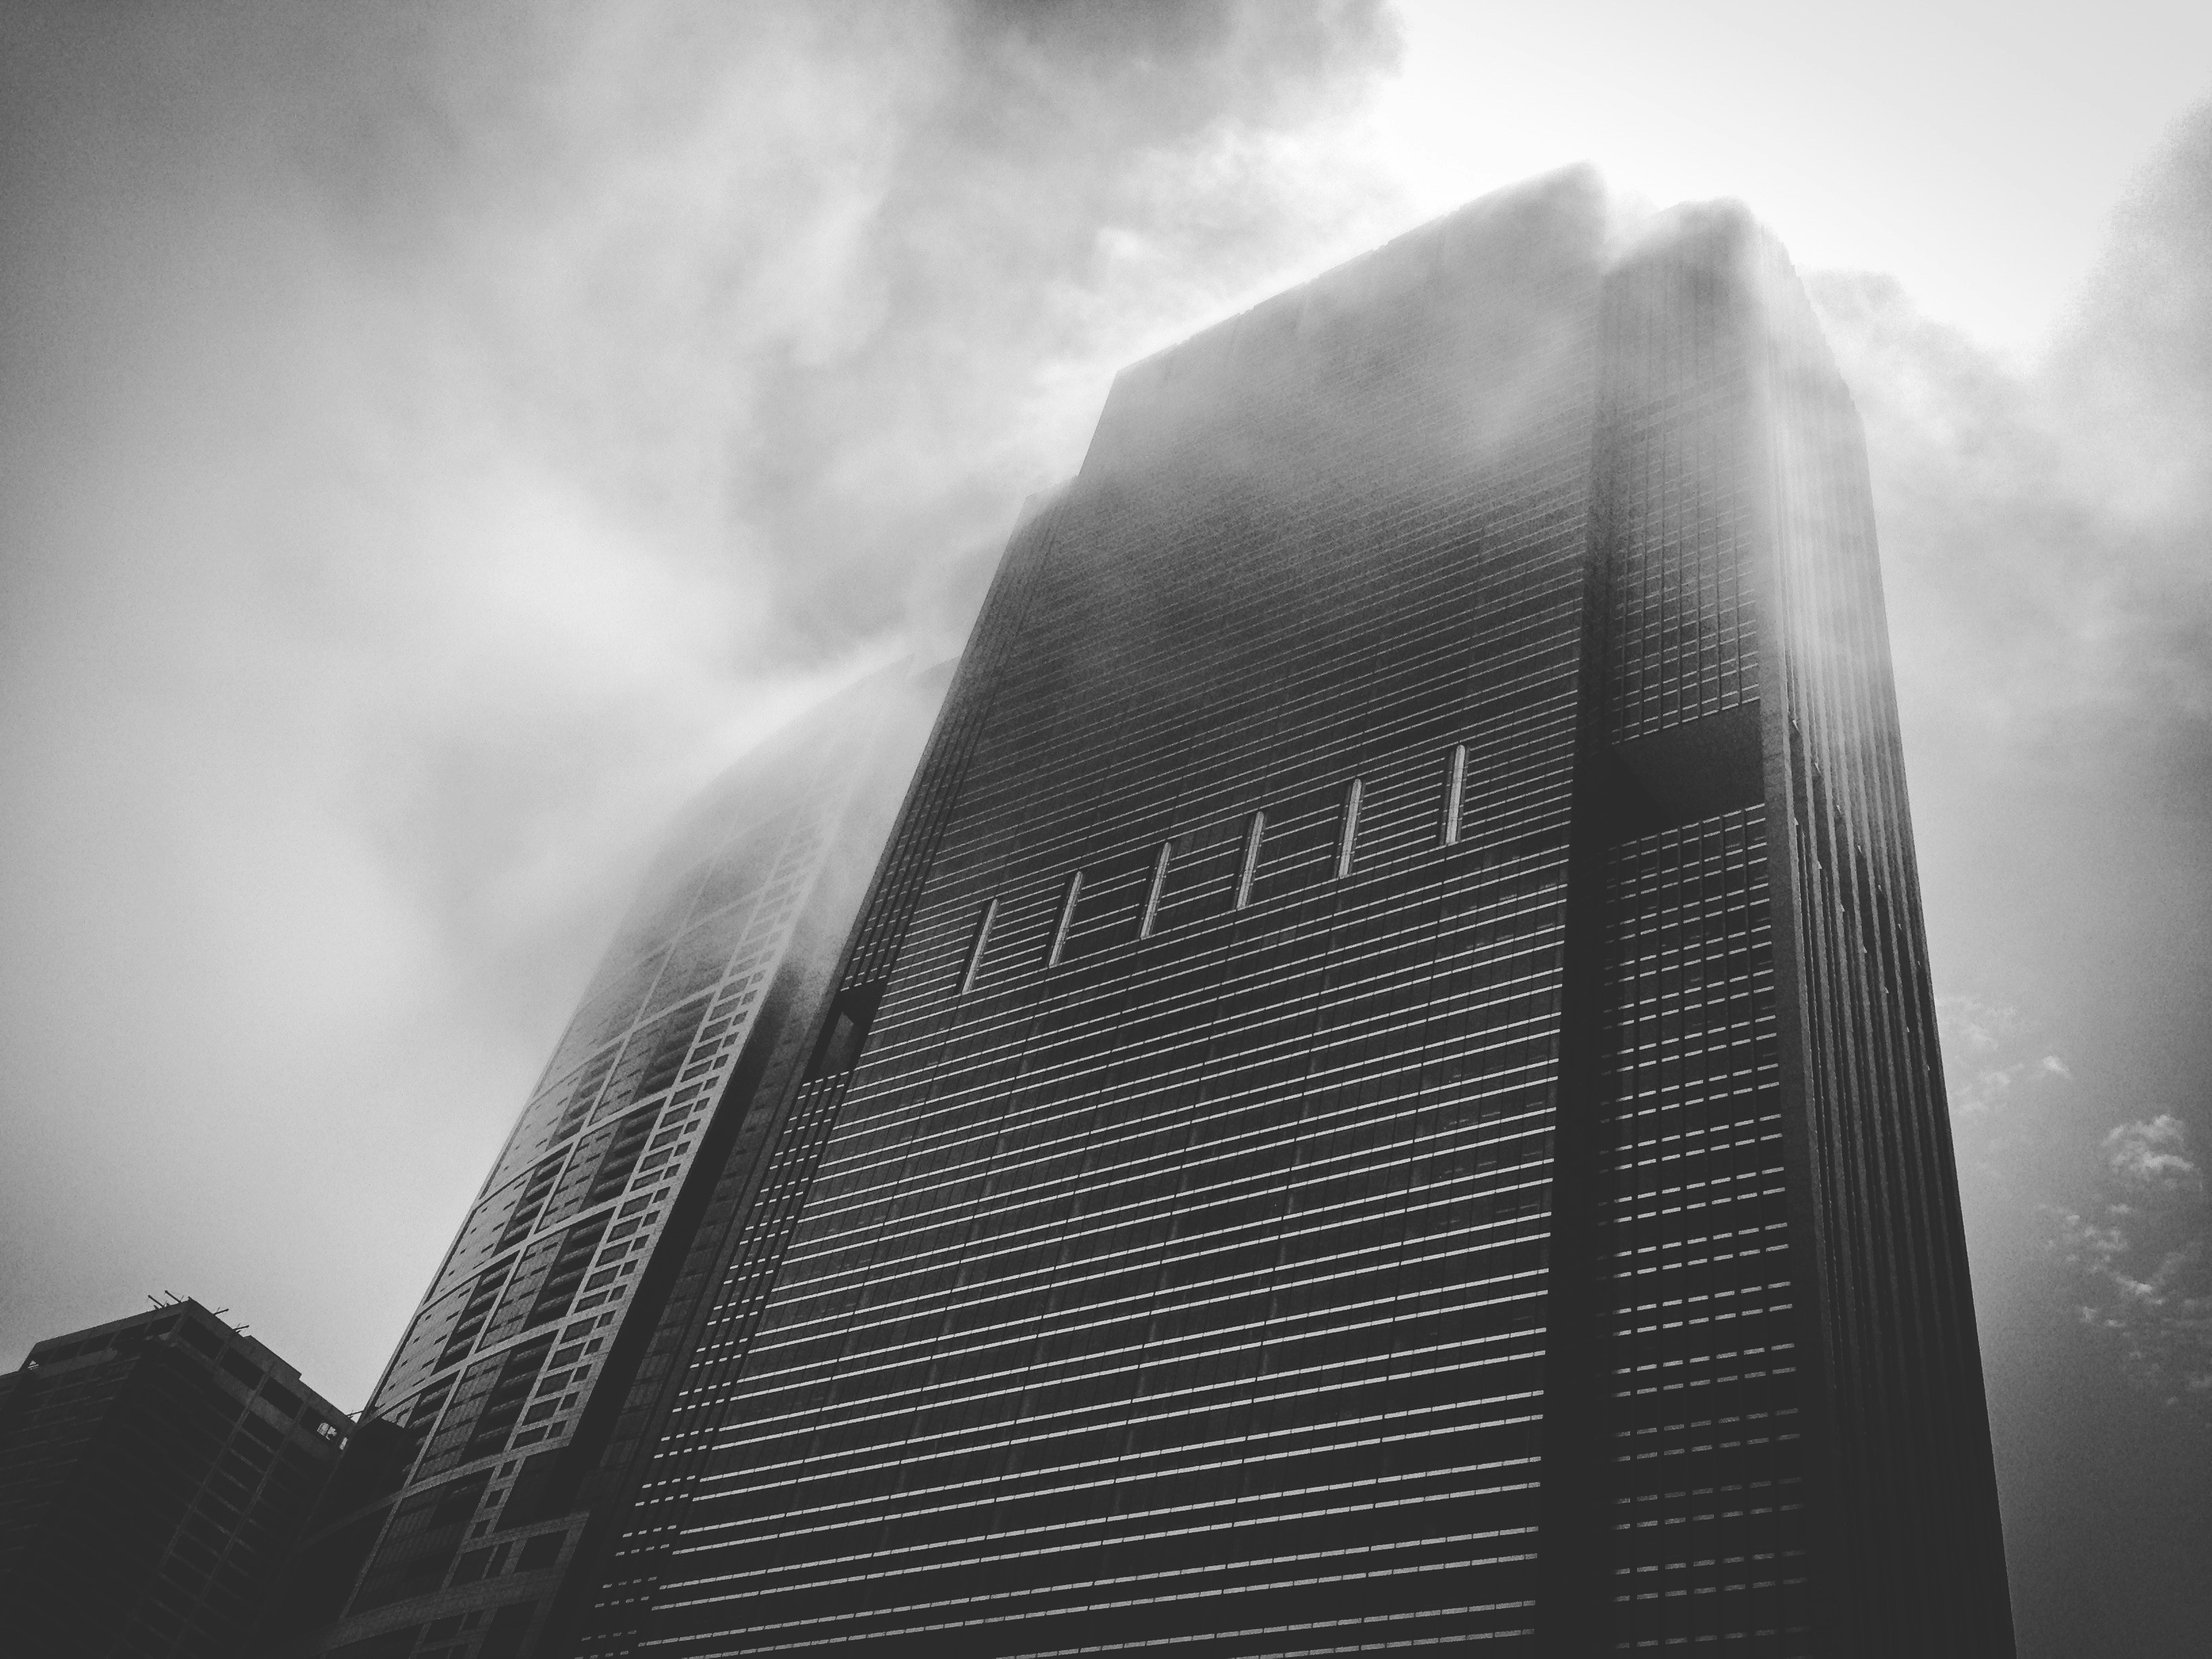 Ominous skyscraper